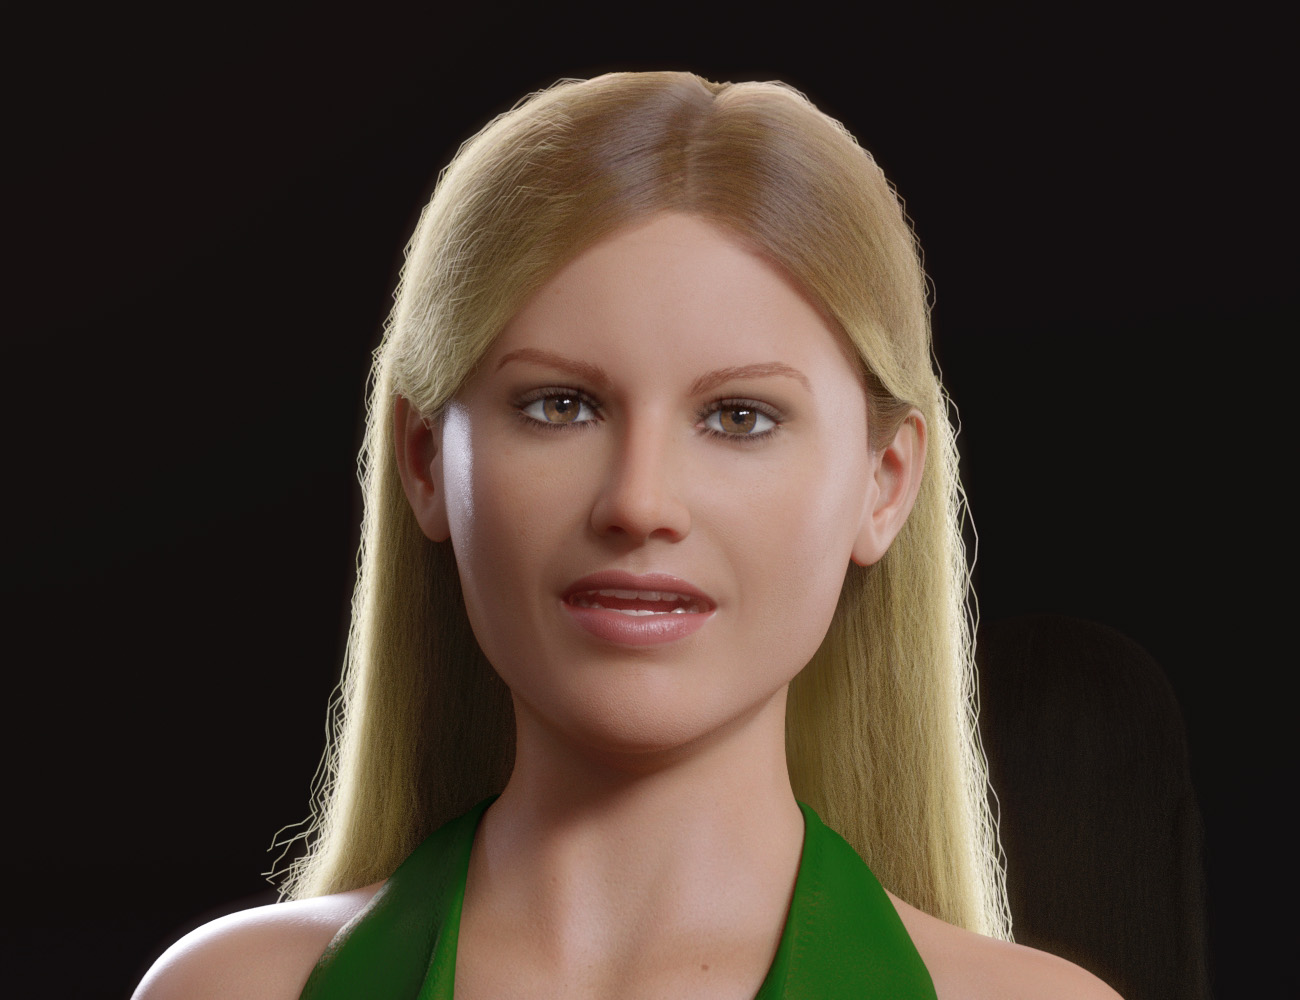 dForce Tucked Long Hair for Genesis 8 Females by: PhilW, 3D Models by Daz 3D